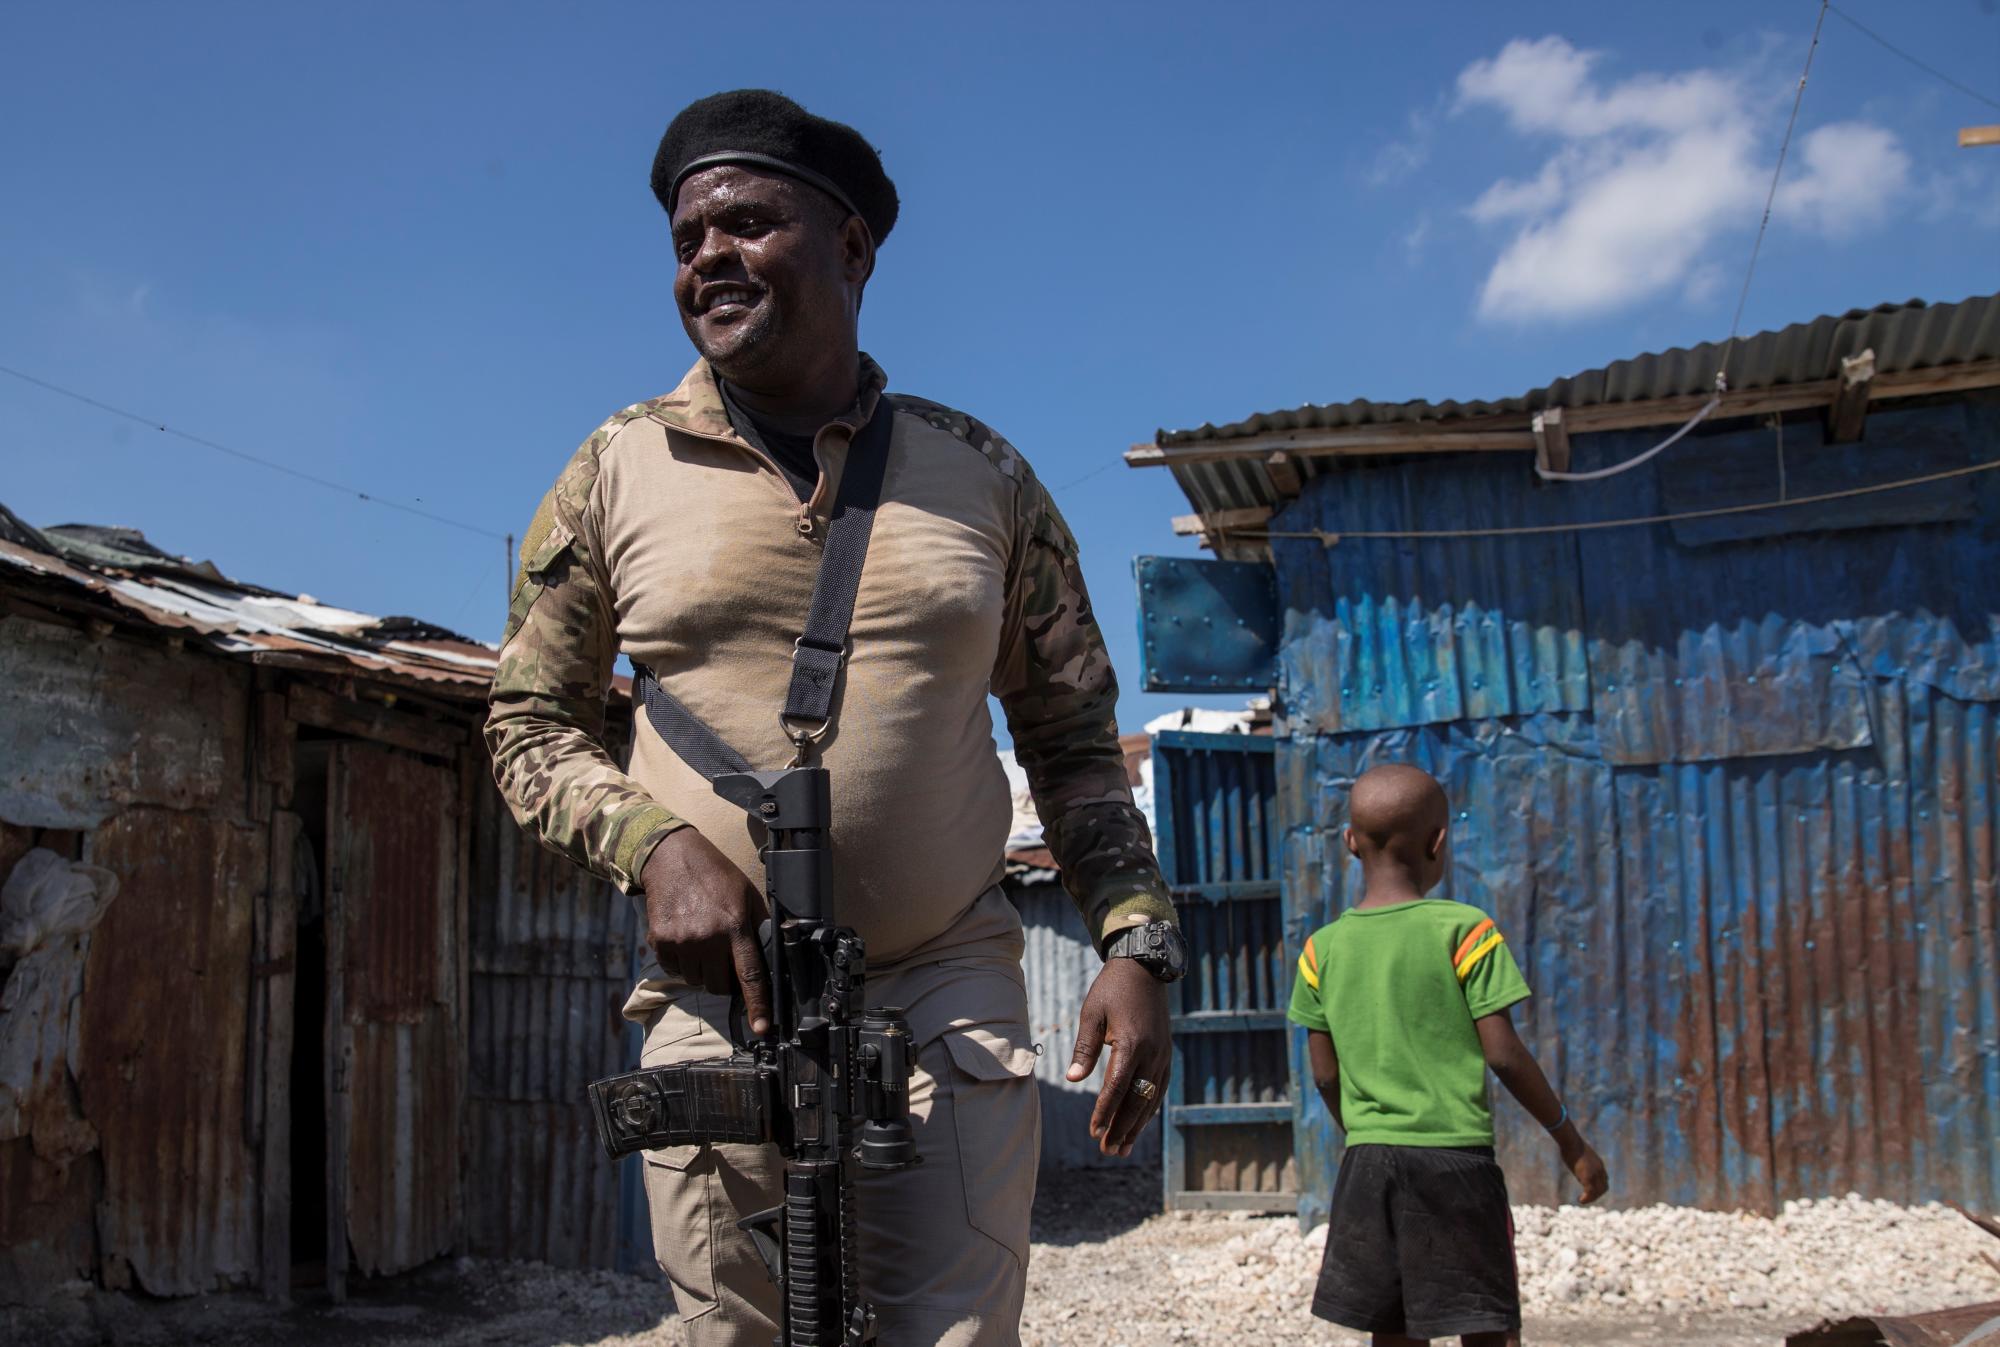 El líder de la principal banda armada de Haití, Jimmy Cherizier, alias Barbecue, vestido de militar y armado, camina hoy por una calle del barrio La Saline, en Puerto Príncipe (Haití). EFE/ Orlando Barría